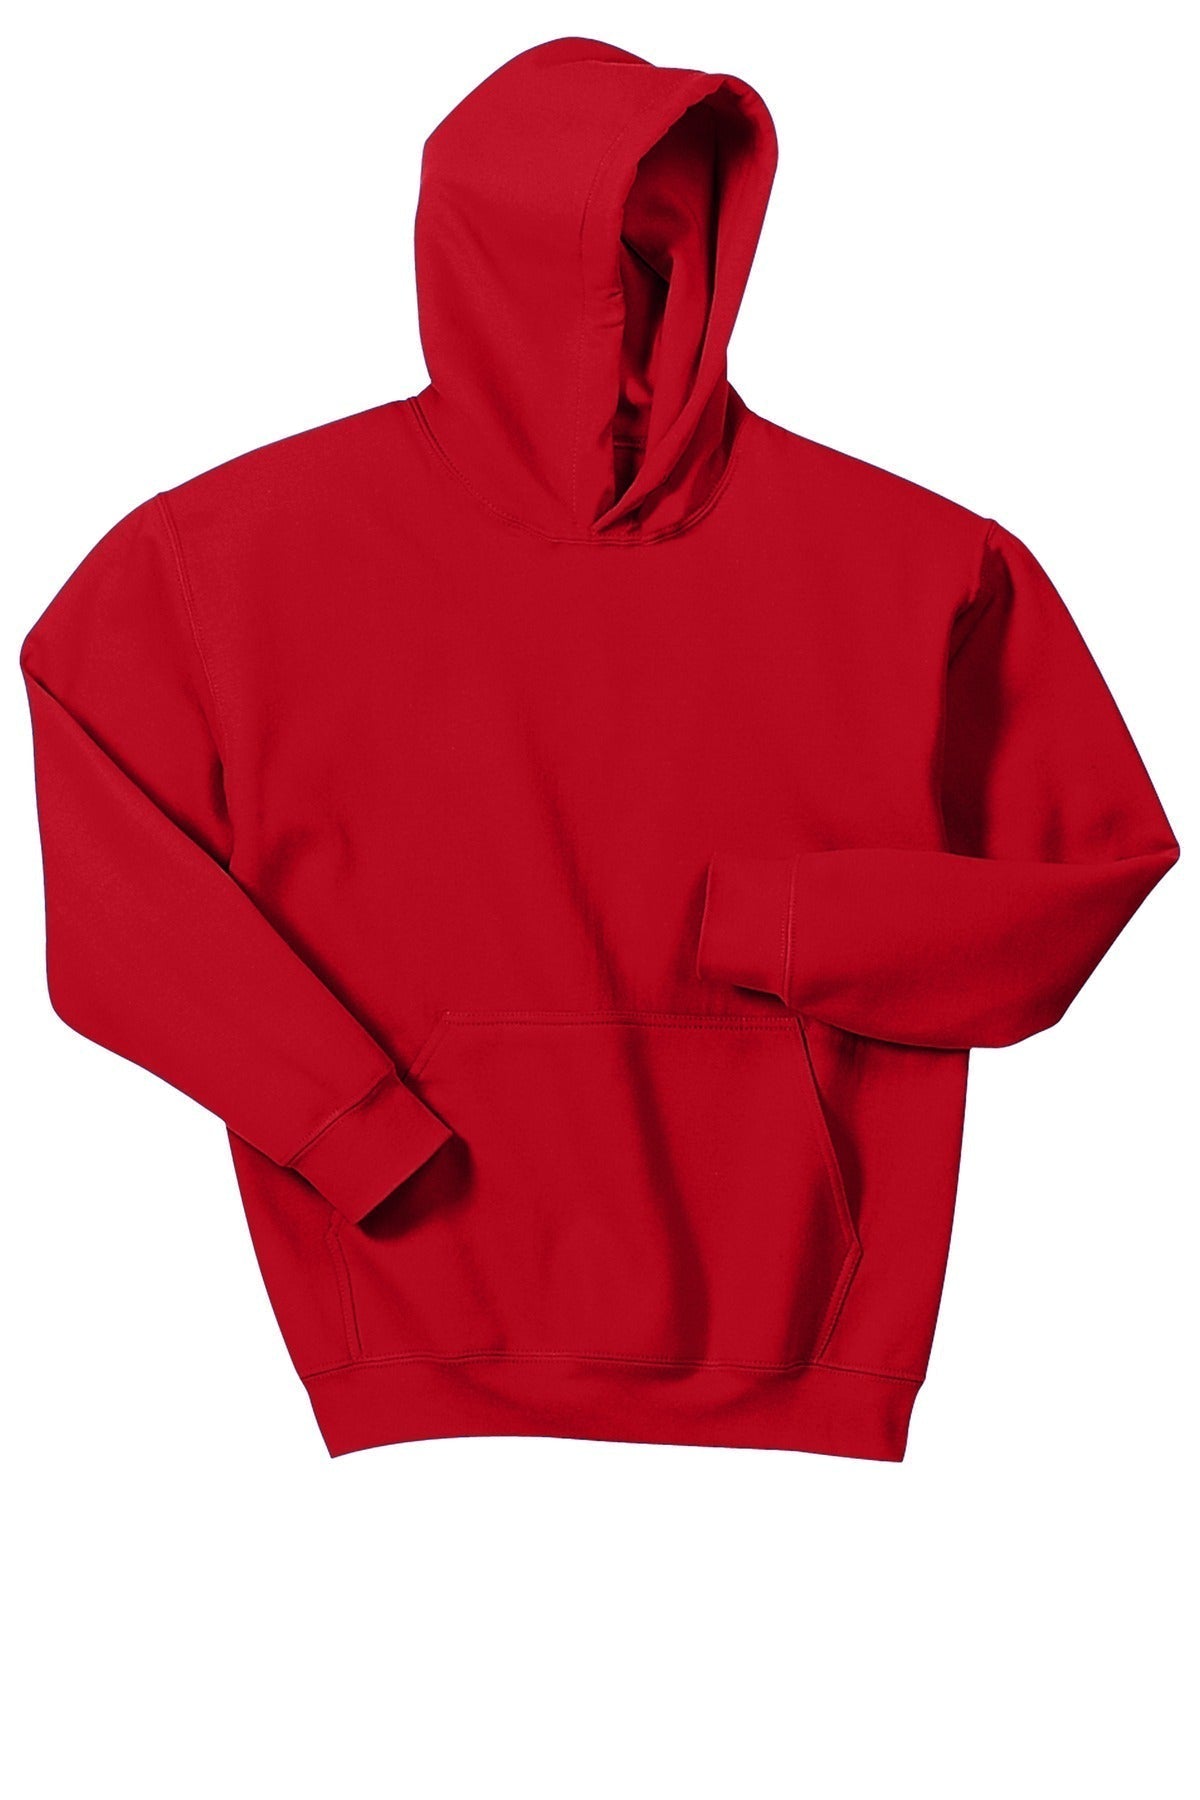 Gone RogueGildan® - Youth Heavy Blend™ Hooded Sweatshirt. 18500B Logo #5